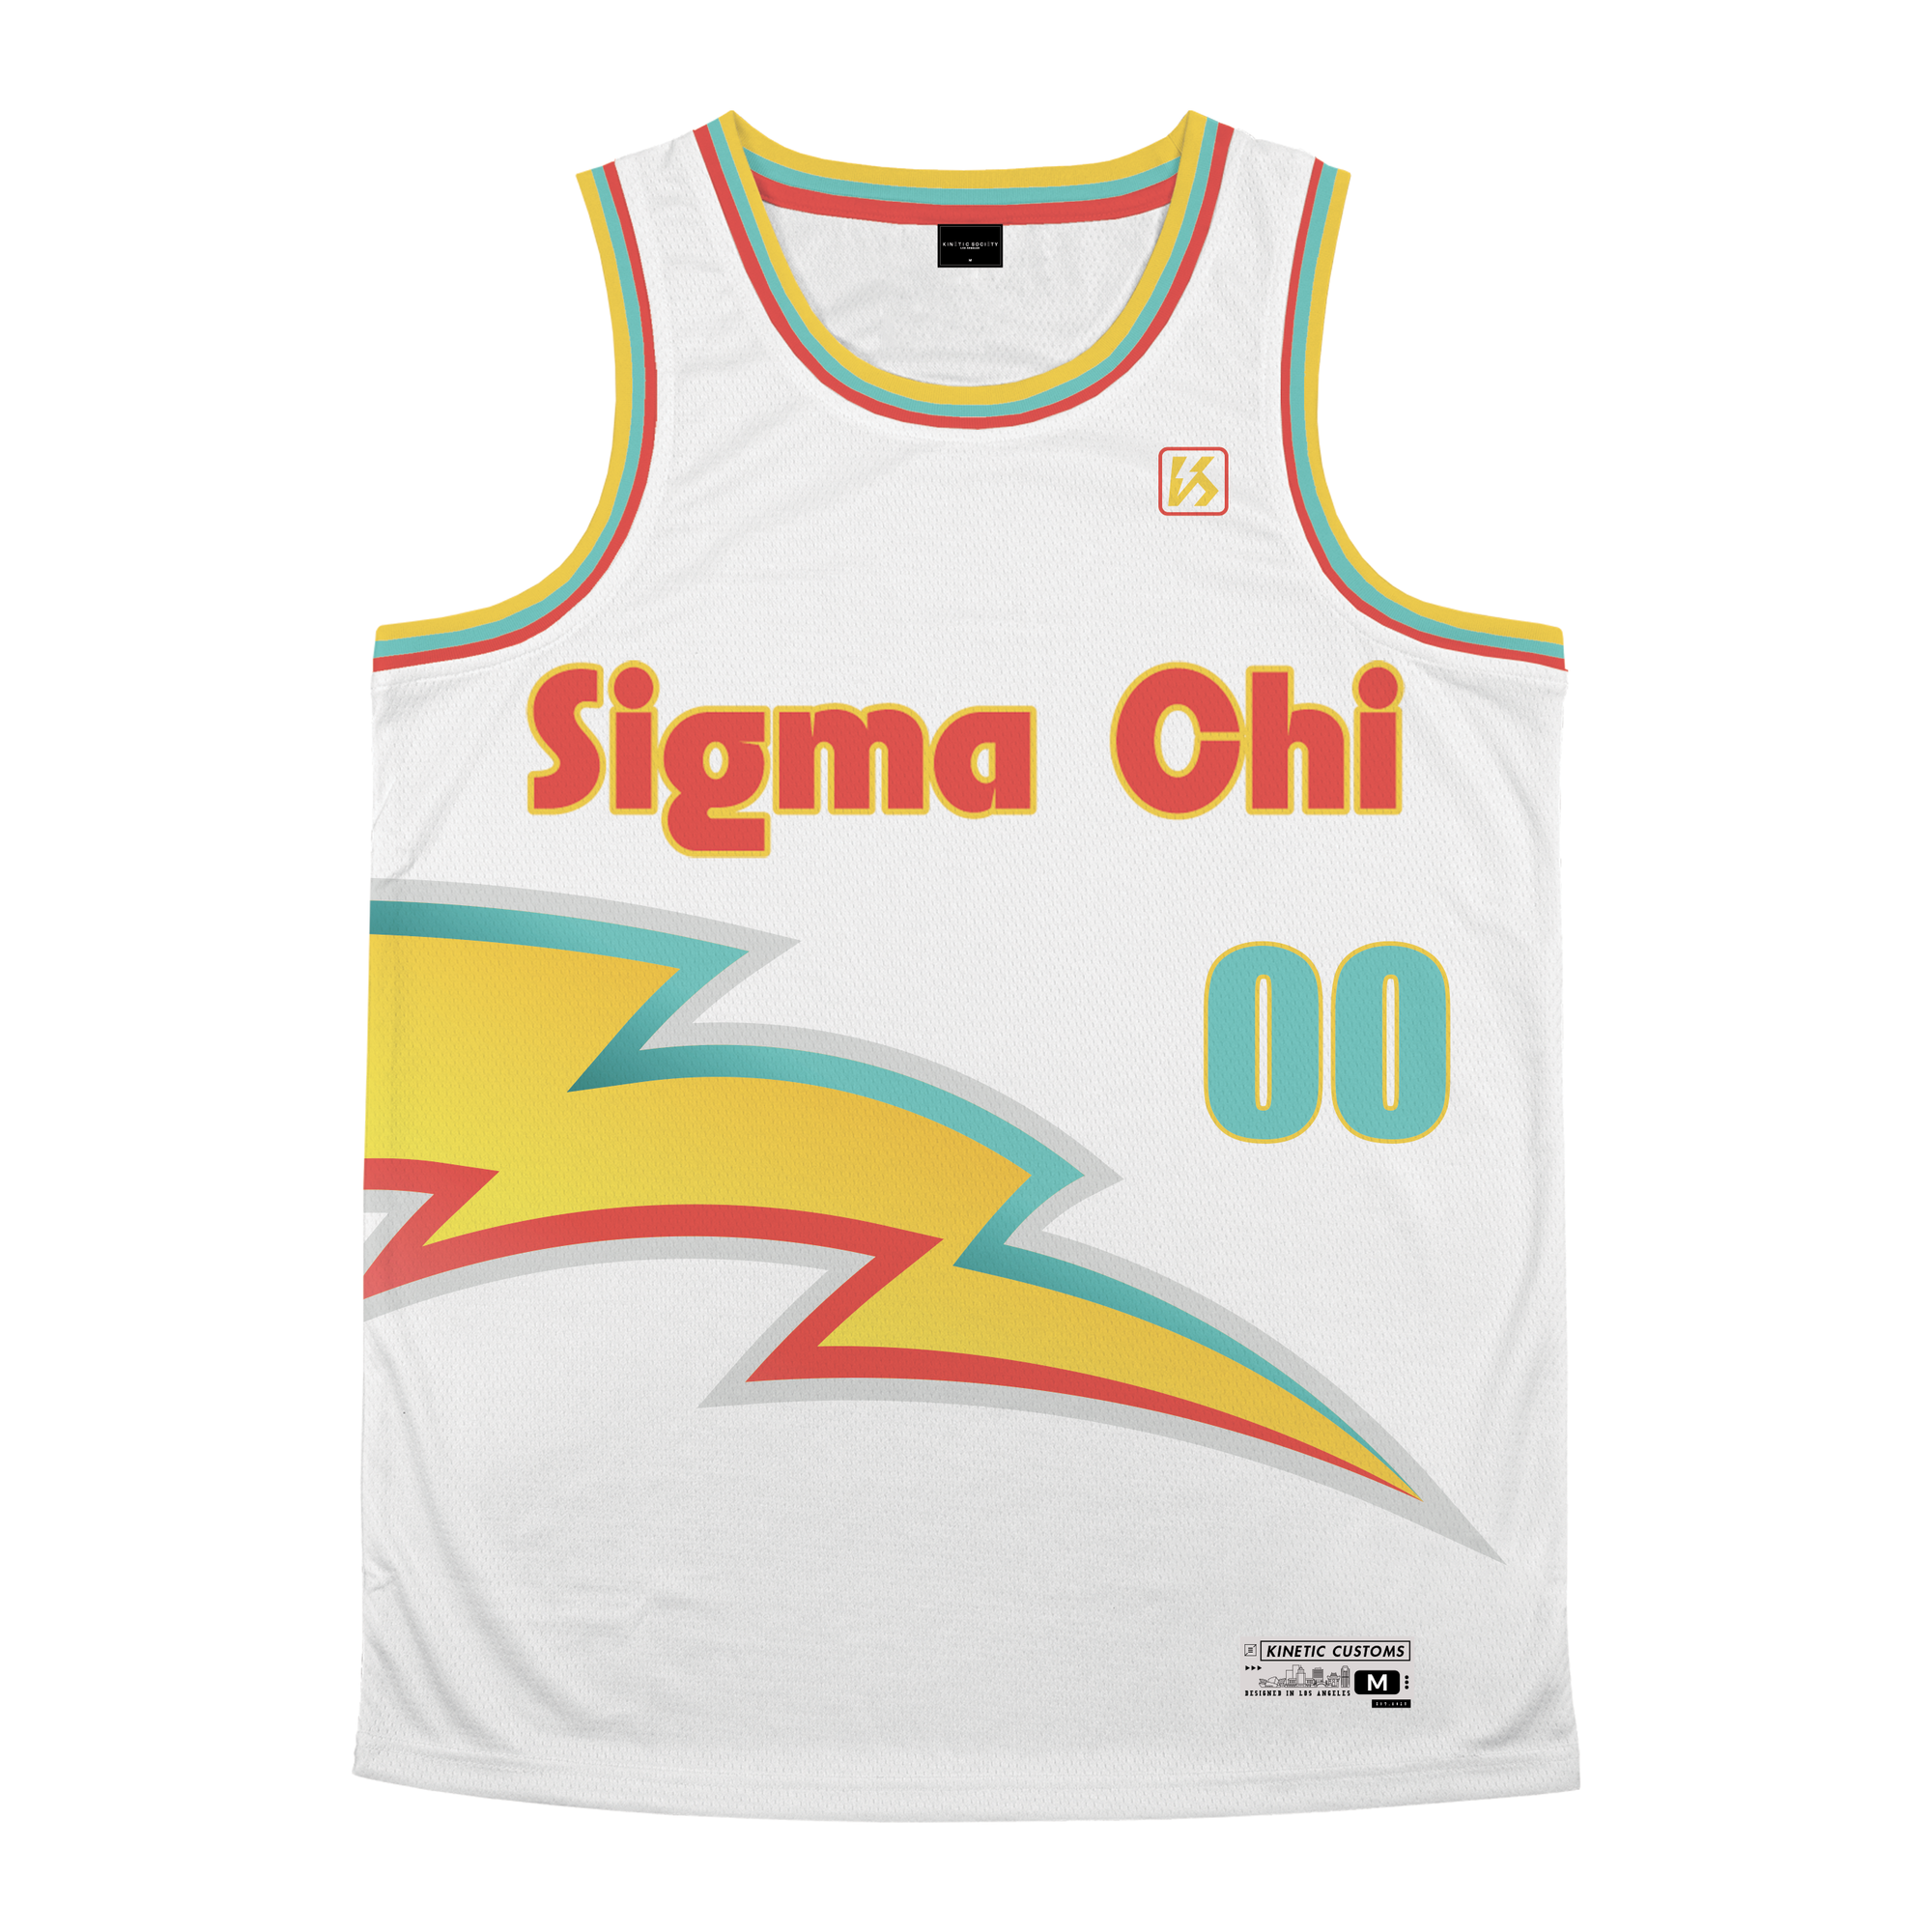 Sigma Chi - Bolt Basketball Jersey